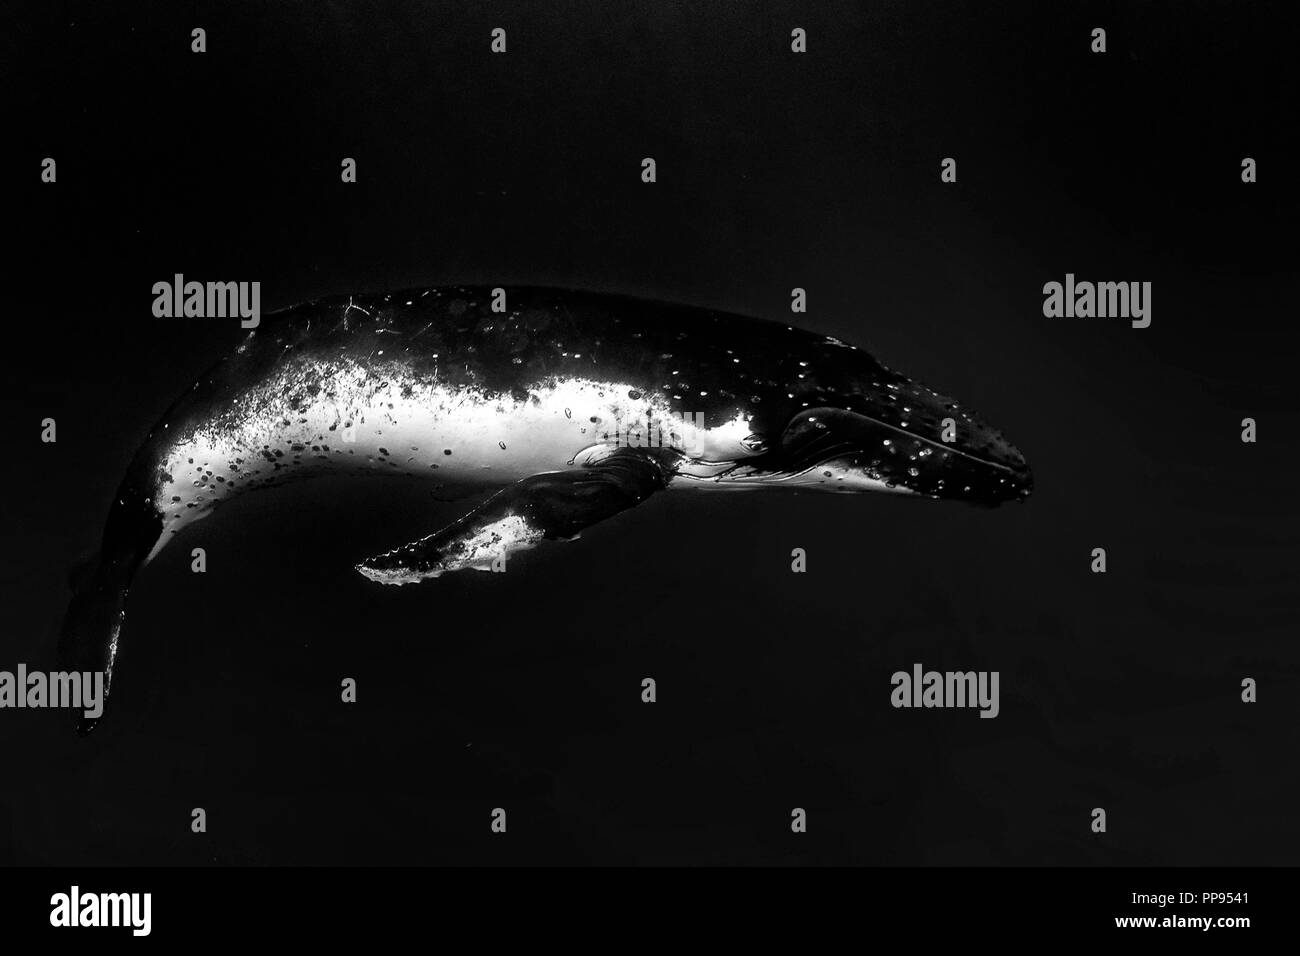 Baleine à bosse sous l'eau dans l'océan pacifique Moorea Polynésie Française isolated on black Banque D'Images